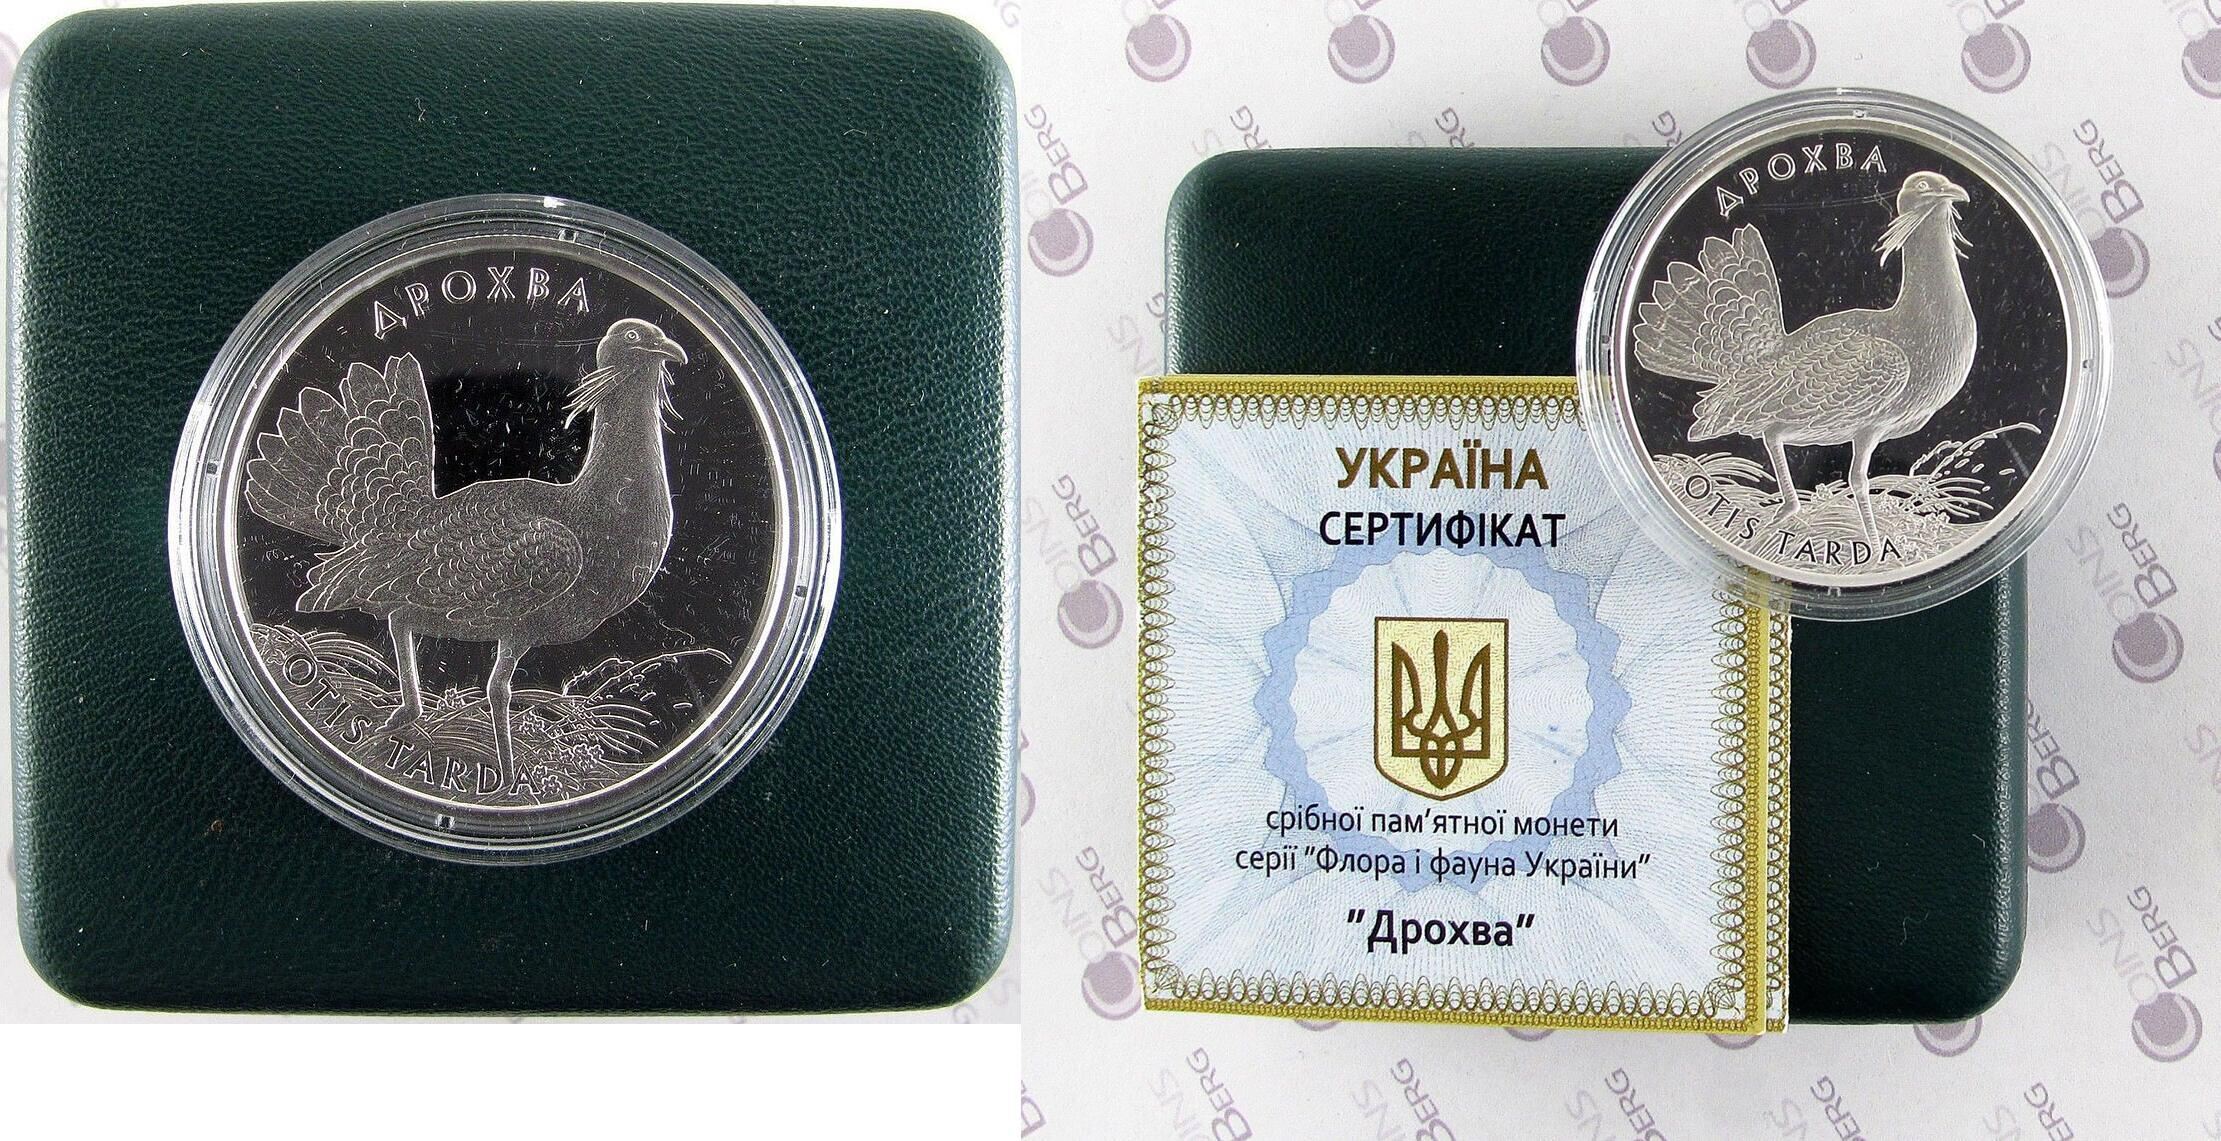 OTIS TARDA Bird Fauna Red Book THE GREAT BUSTARD Ukraine 2013 Fauna Silver Coin 